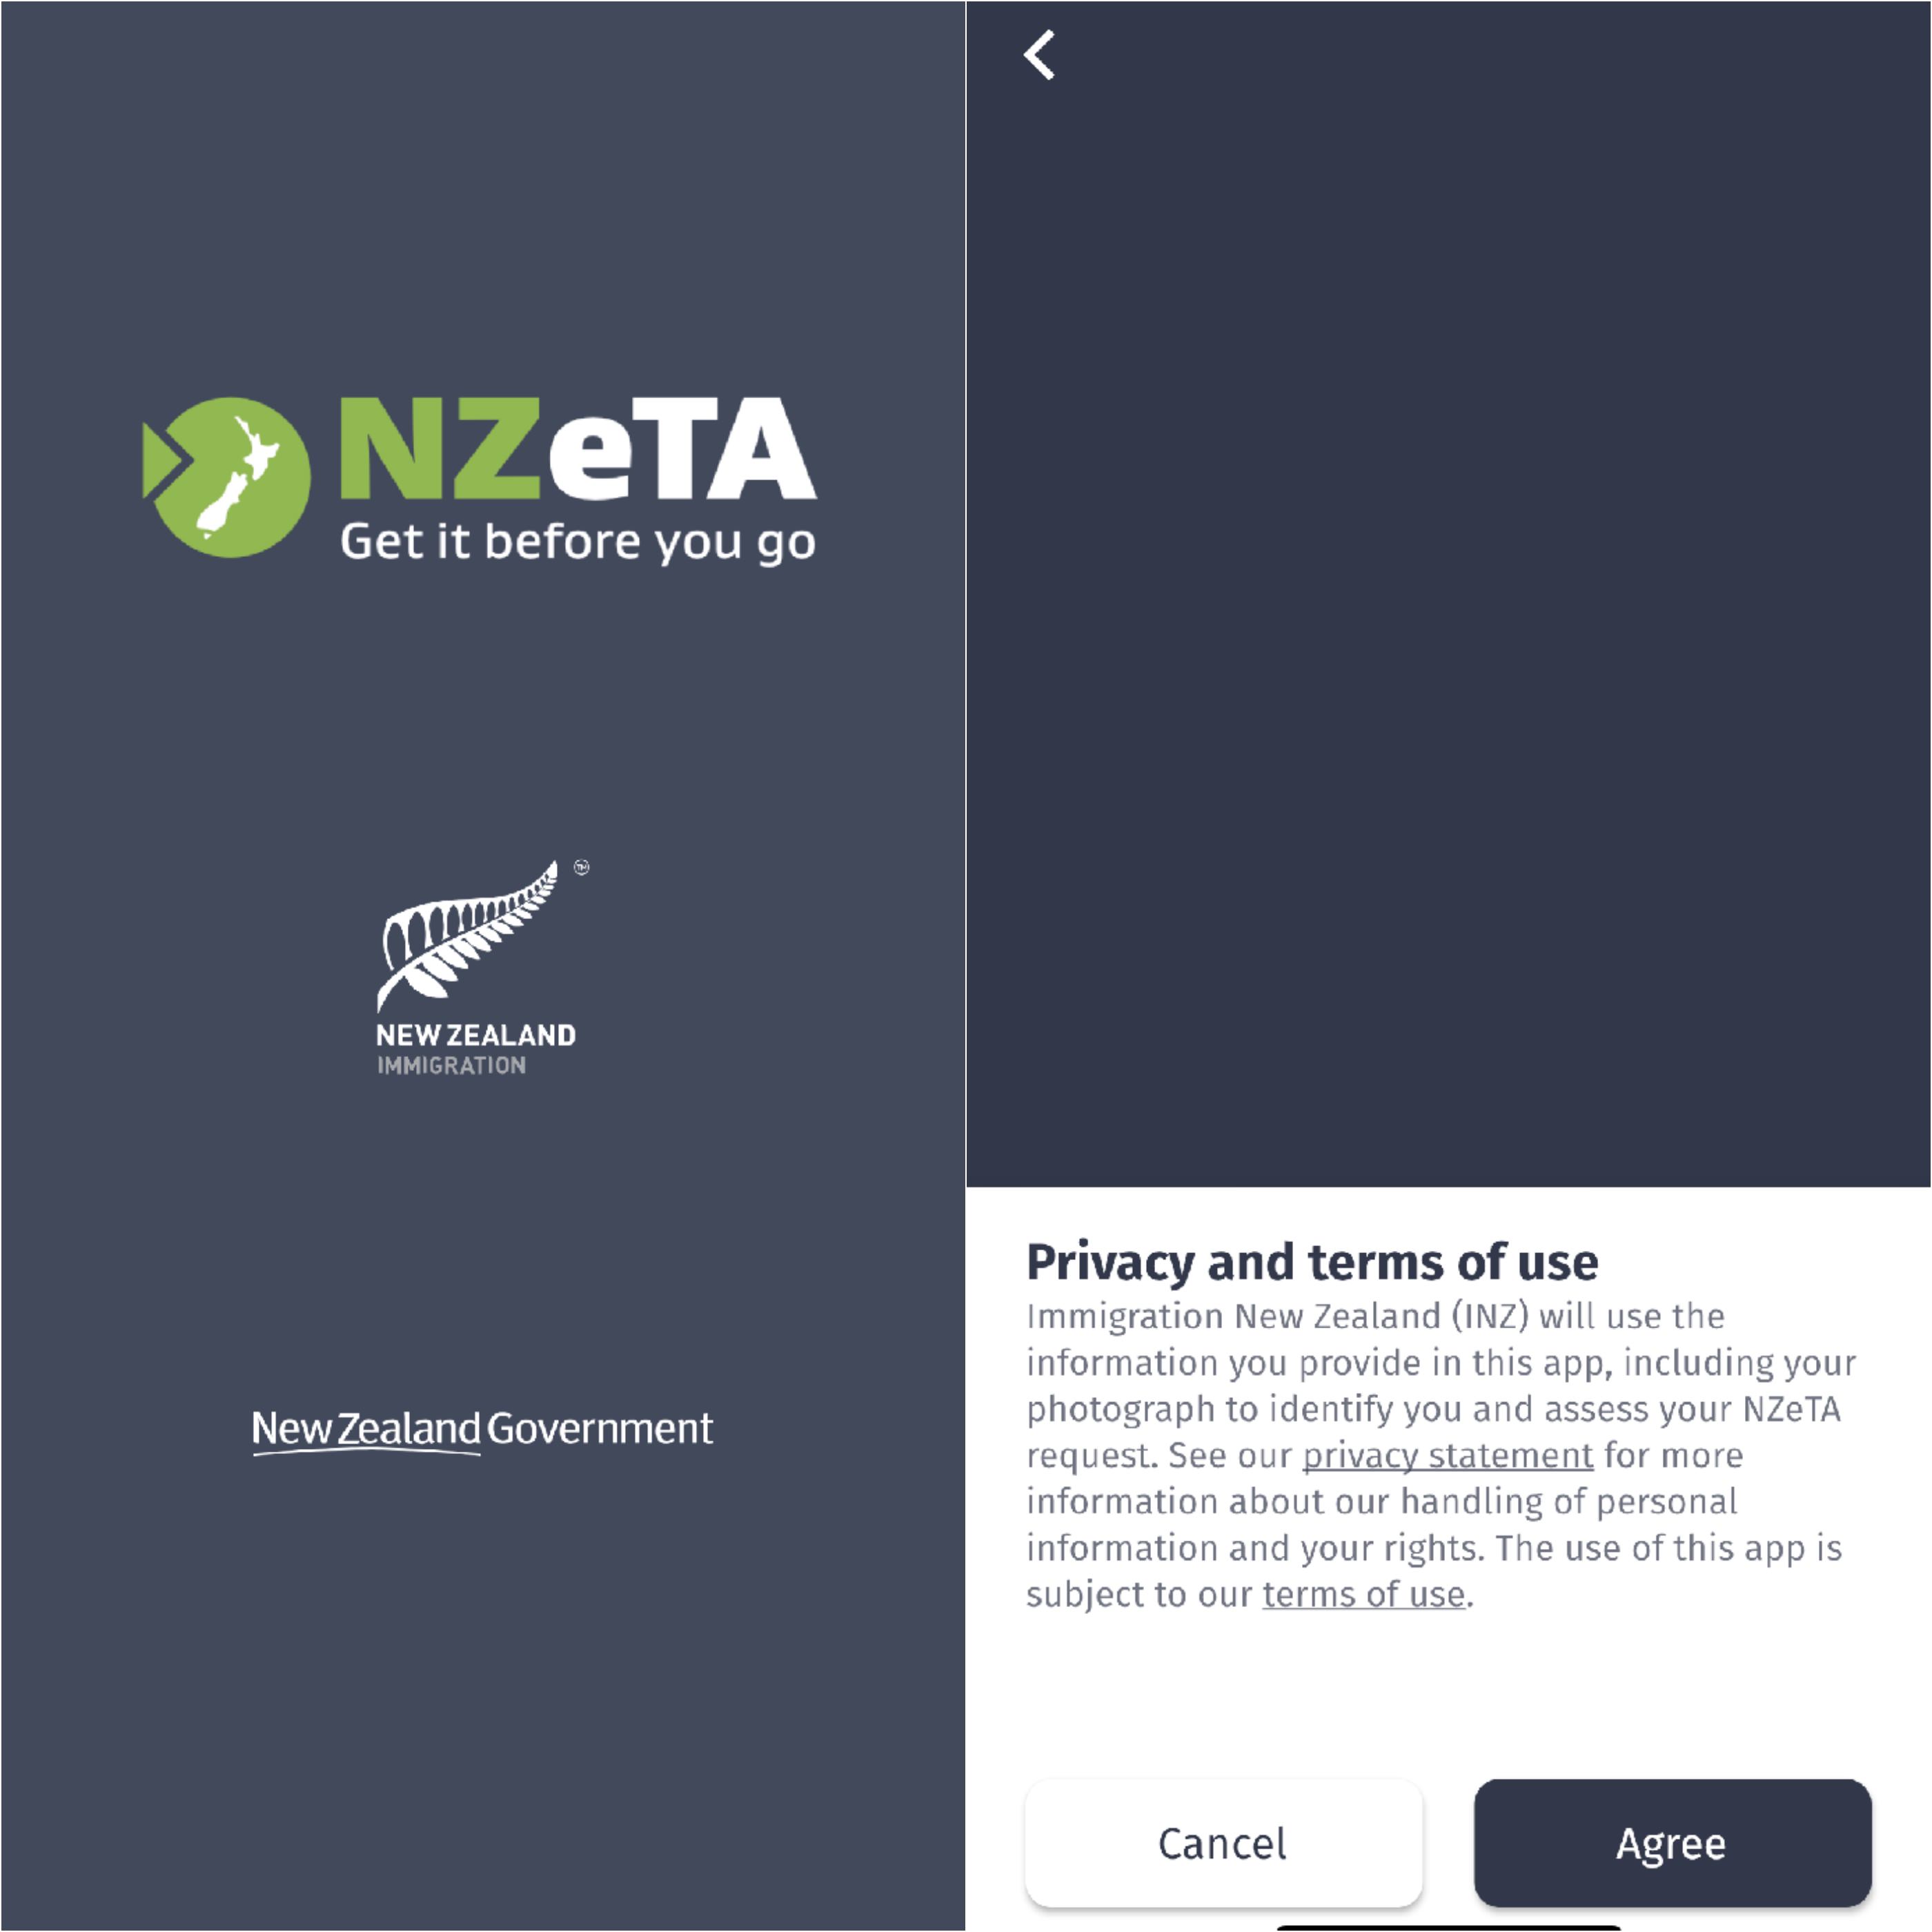 紐西蘭,紐西蘭簽證, nzeta, IVL,紐西蘭電子簽證